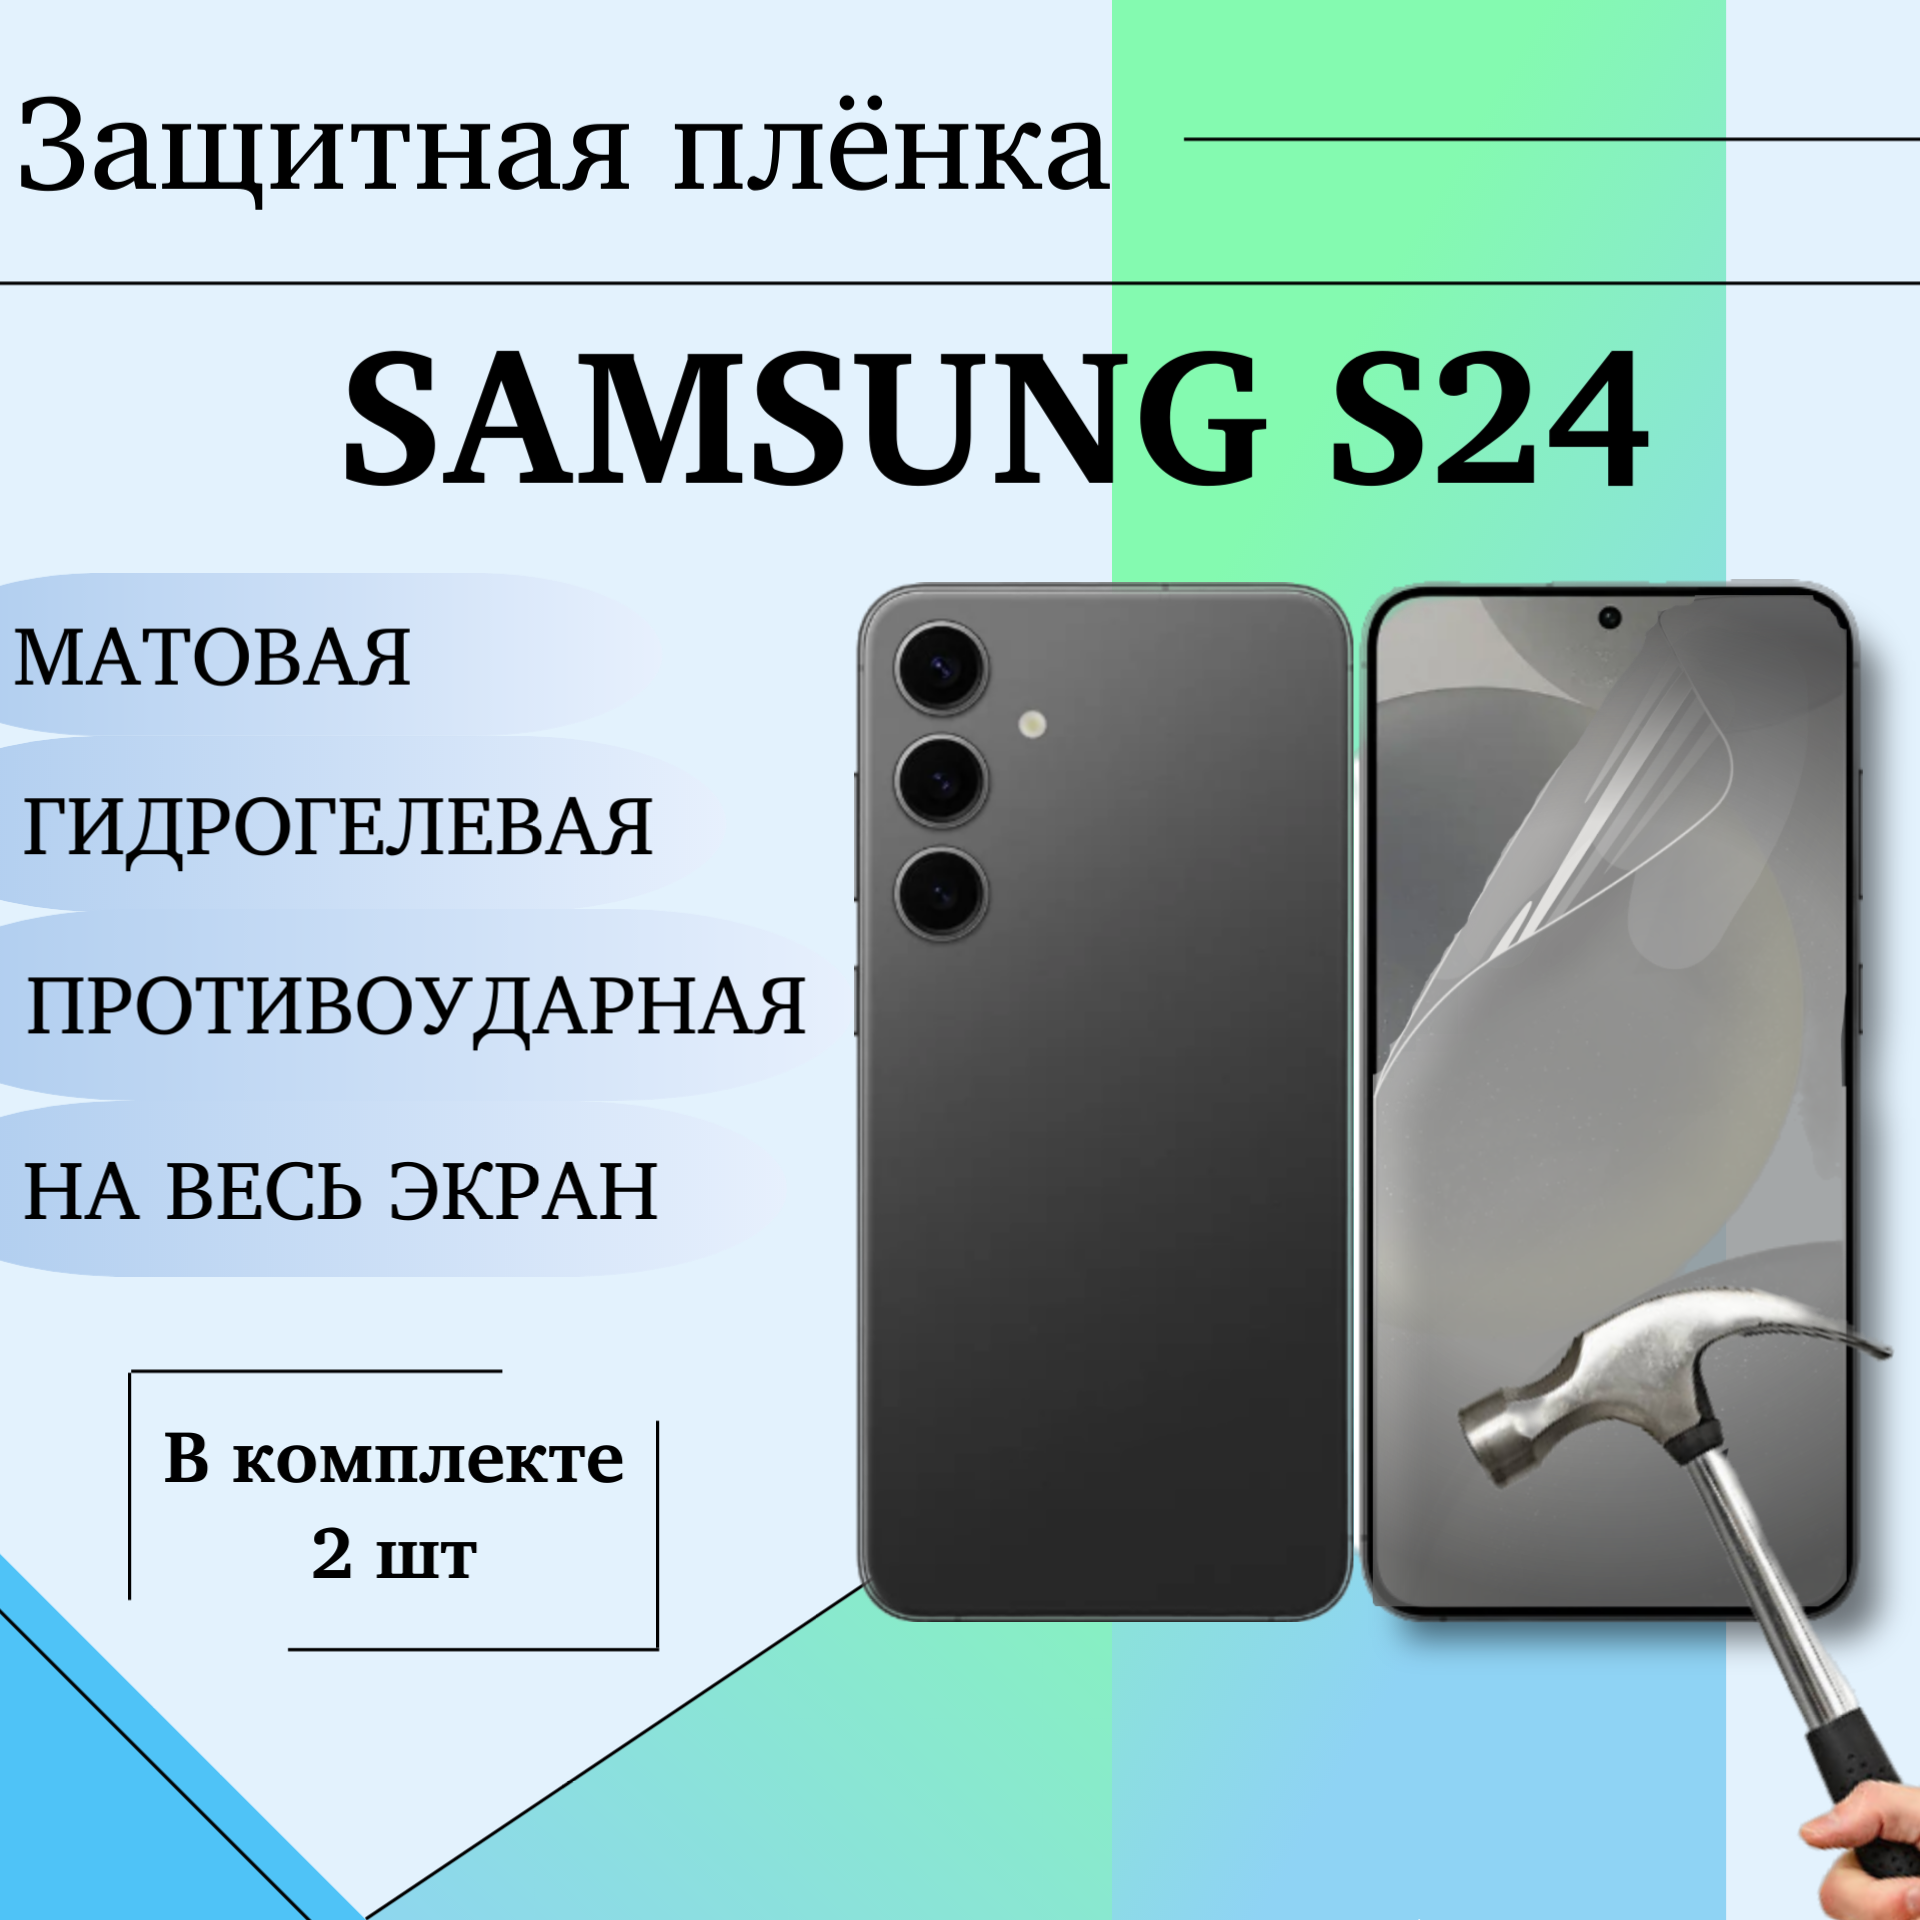 Гидрогелевая защитная пленка для Samsung S24 матовая на весь экран 2 шт